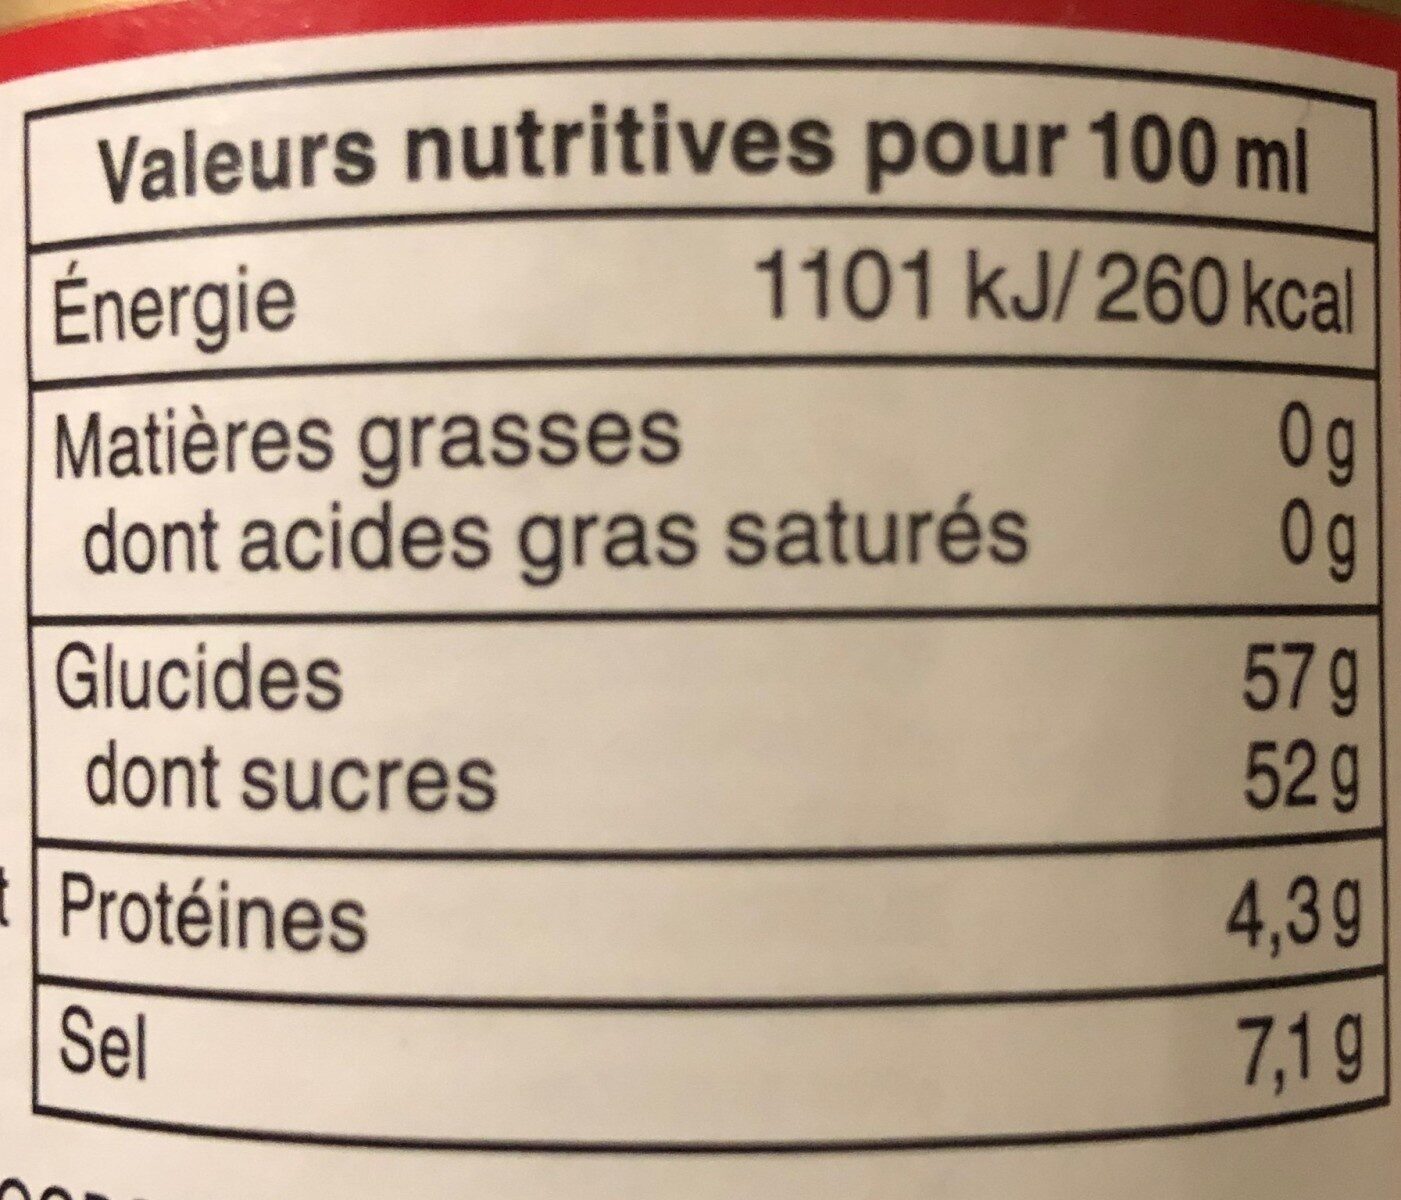 Sauce soja sucrée - Tableau nutritionnel